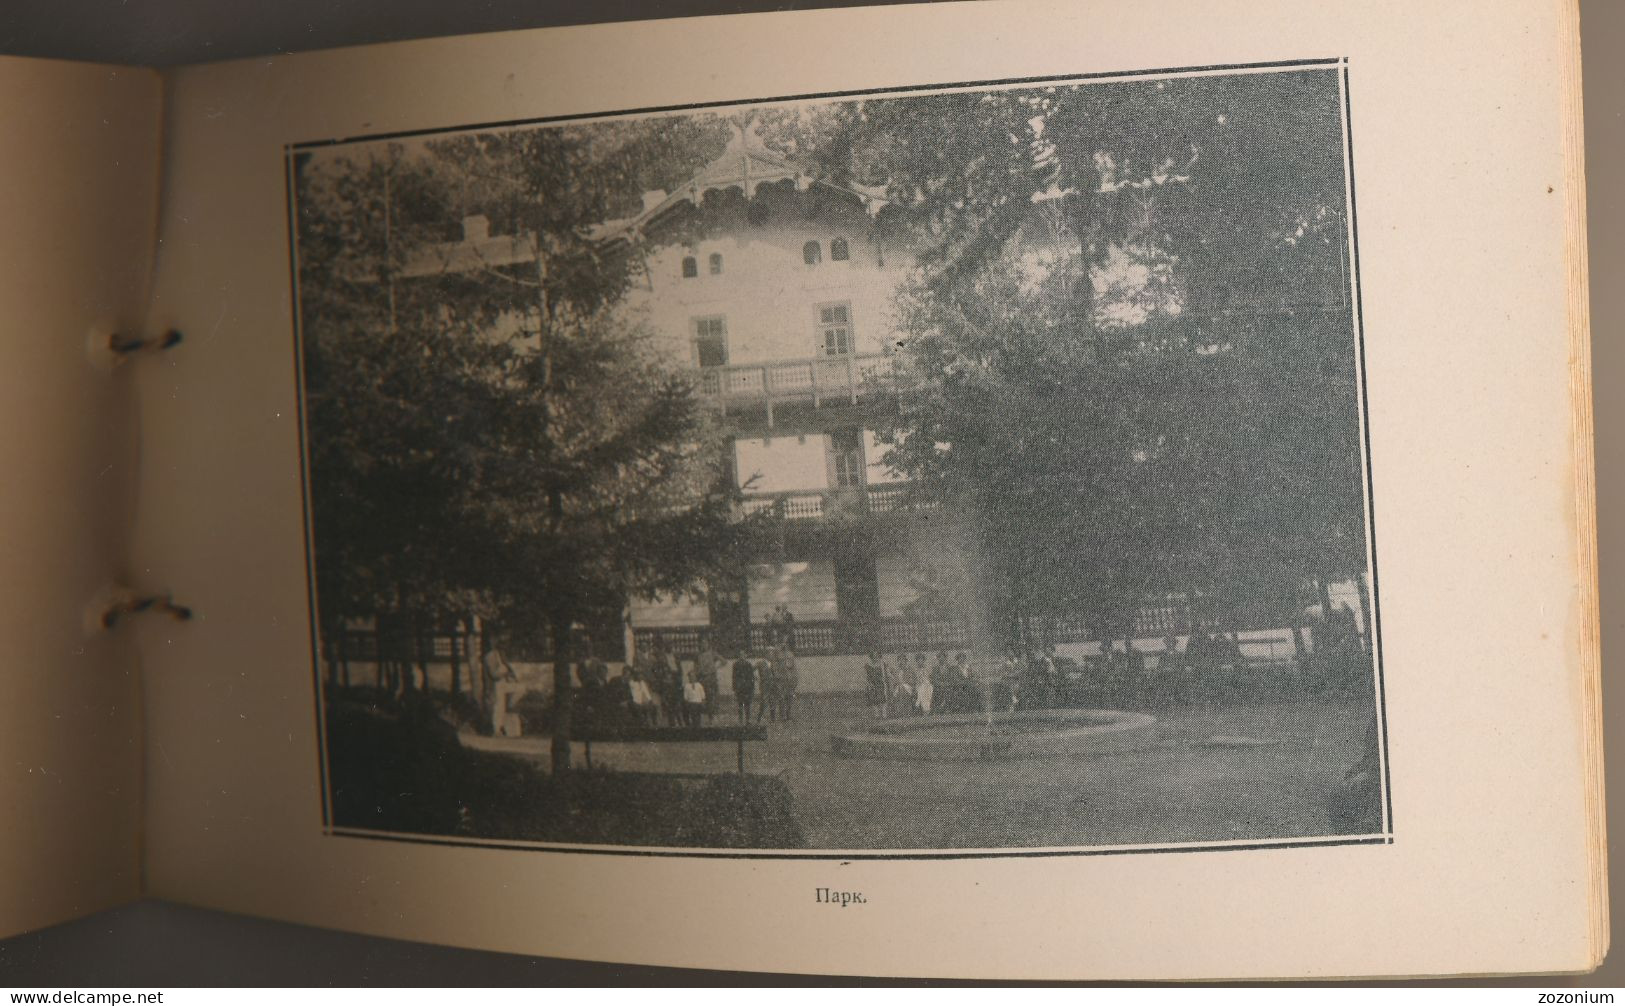 1926 RIBARSKA BANJA karnet, booklet with 15 images 15 Fotografija SRBIJA old book